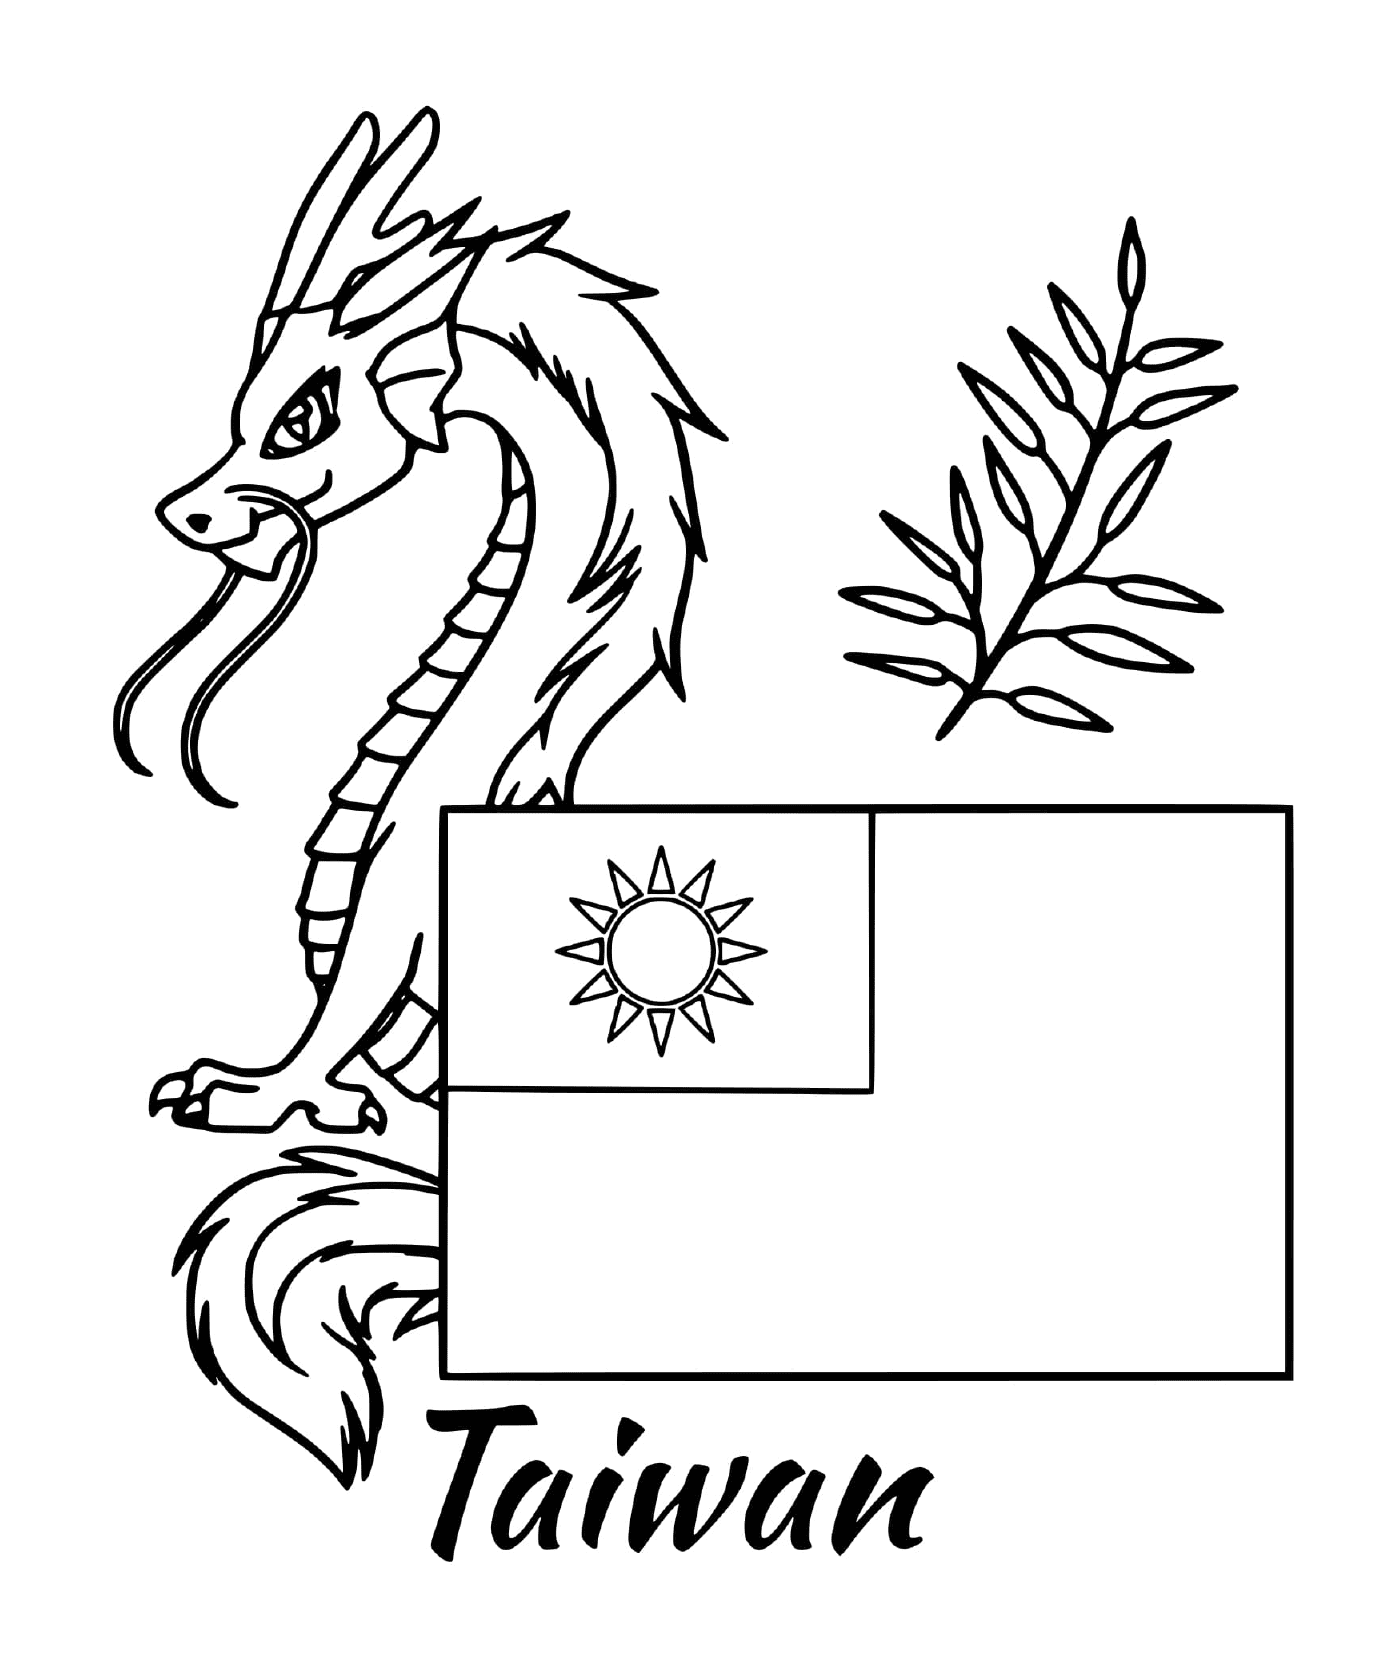  Bandera de Taiwán con un dragón 